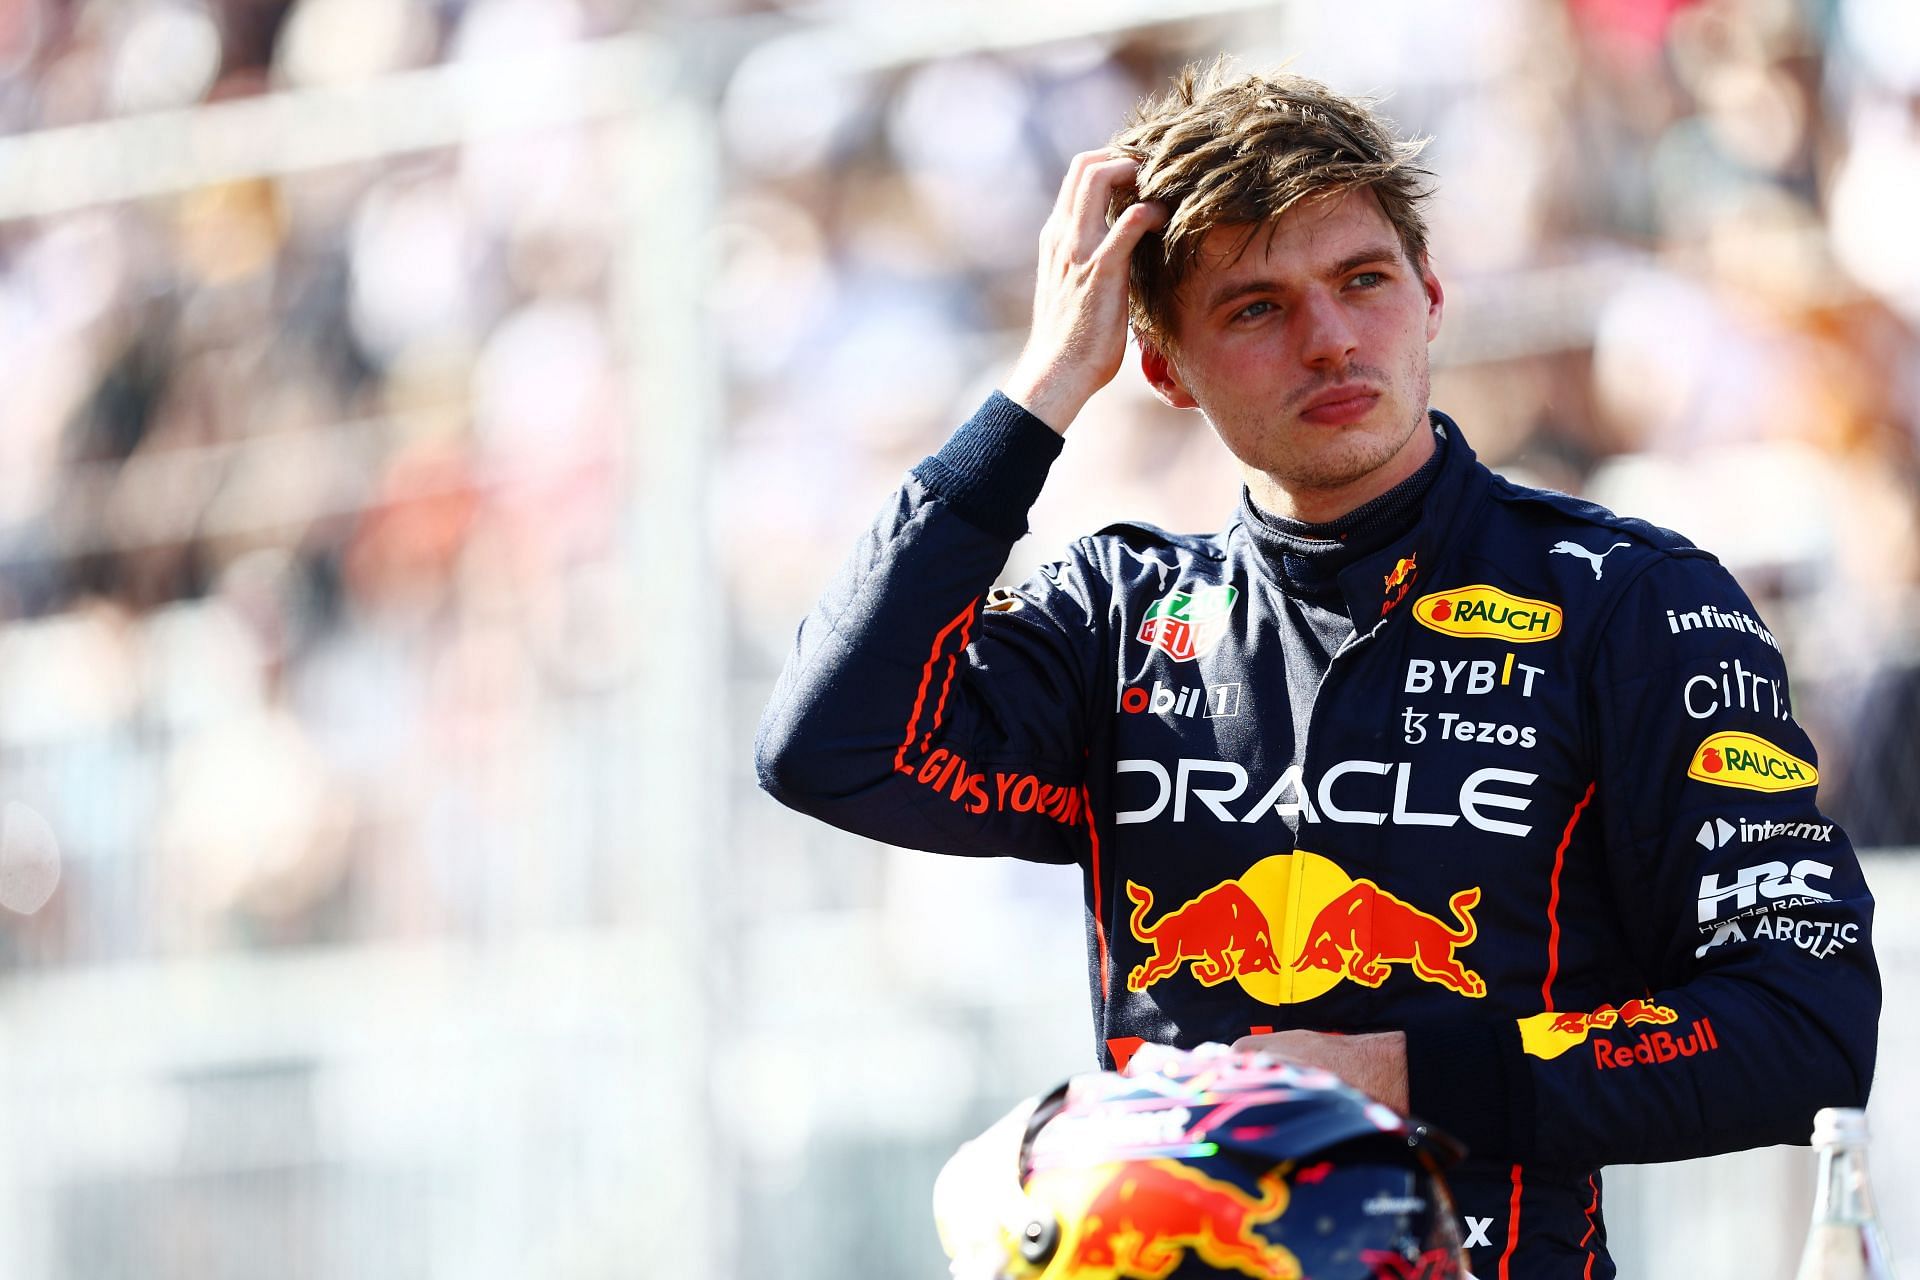 F1 Grand Prix of Miami - Qualifying - Max Verstappen qualifies in P3